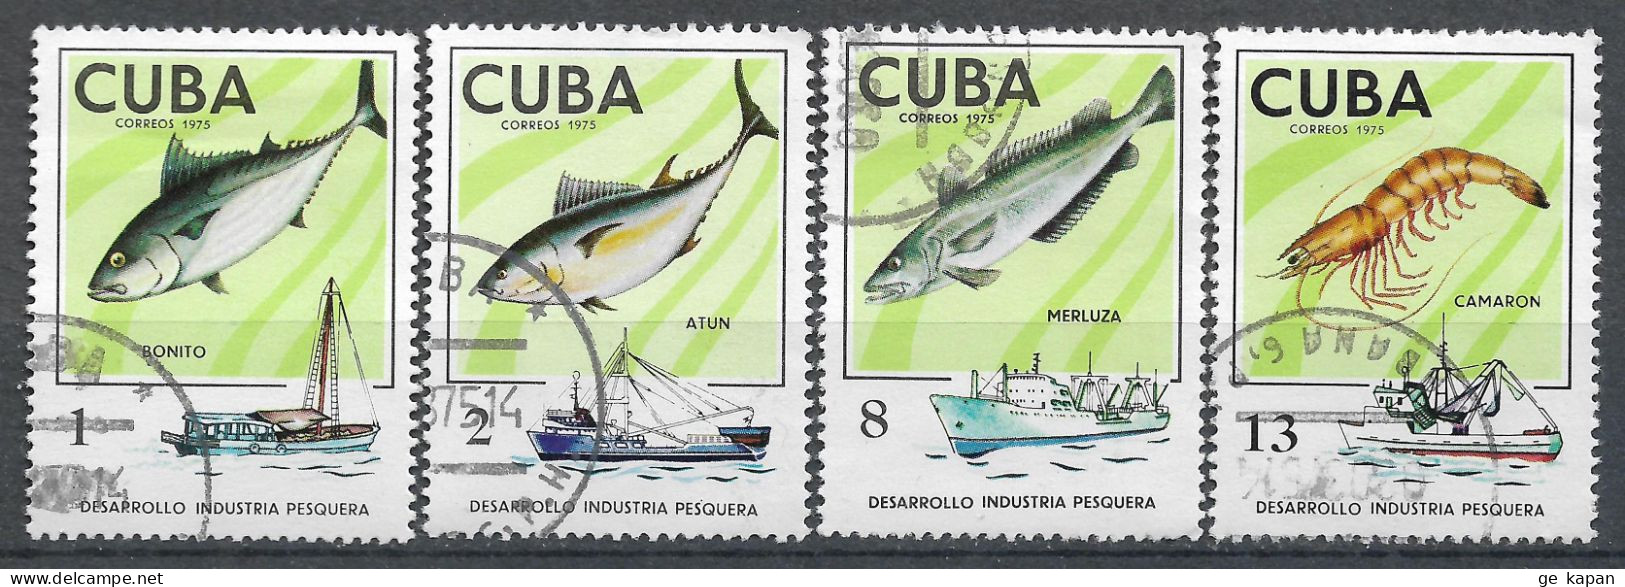 1975 CUBA Set Of 4 Used Stamps (Michel # 2030,2031,2033,2035) CV €1.80 - Oblitérés